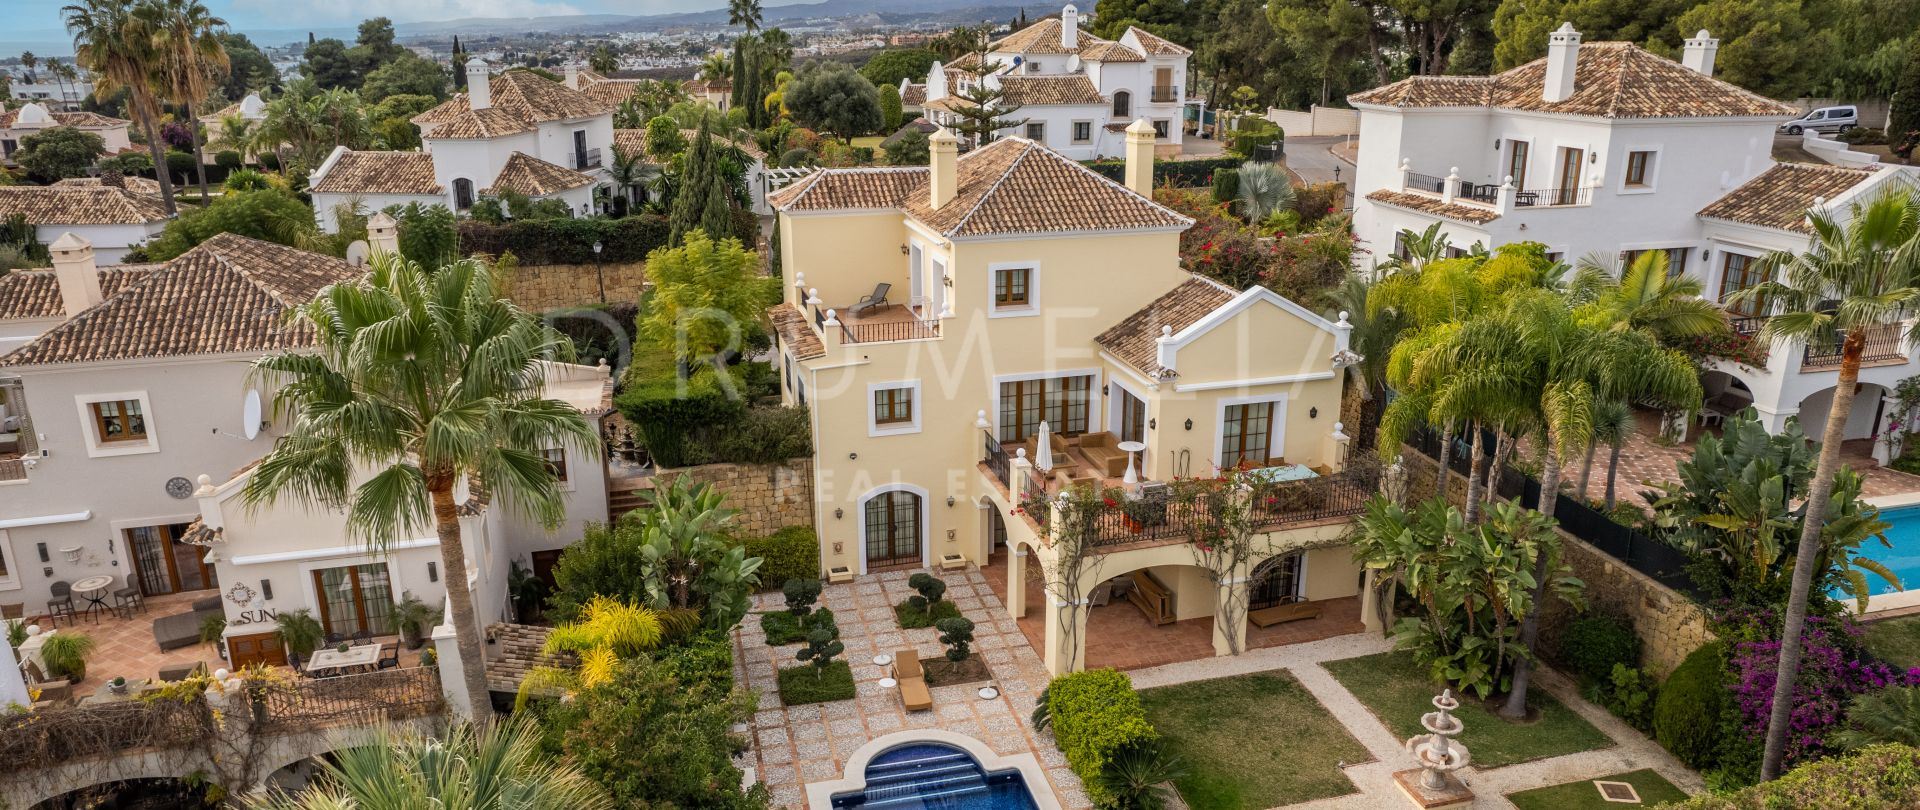 Villa exquise avec vue panoramique sur la mer dans un endroit privilégié, El Paraiso Medio